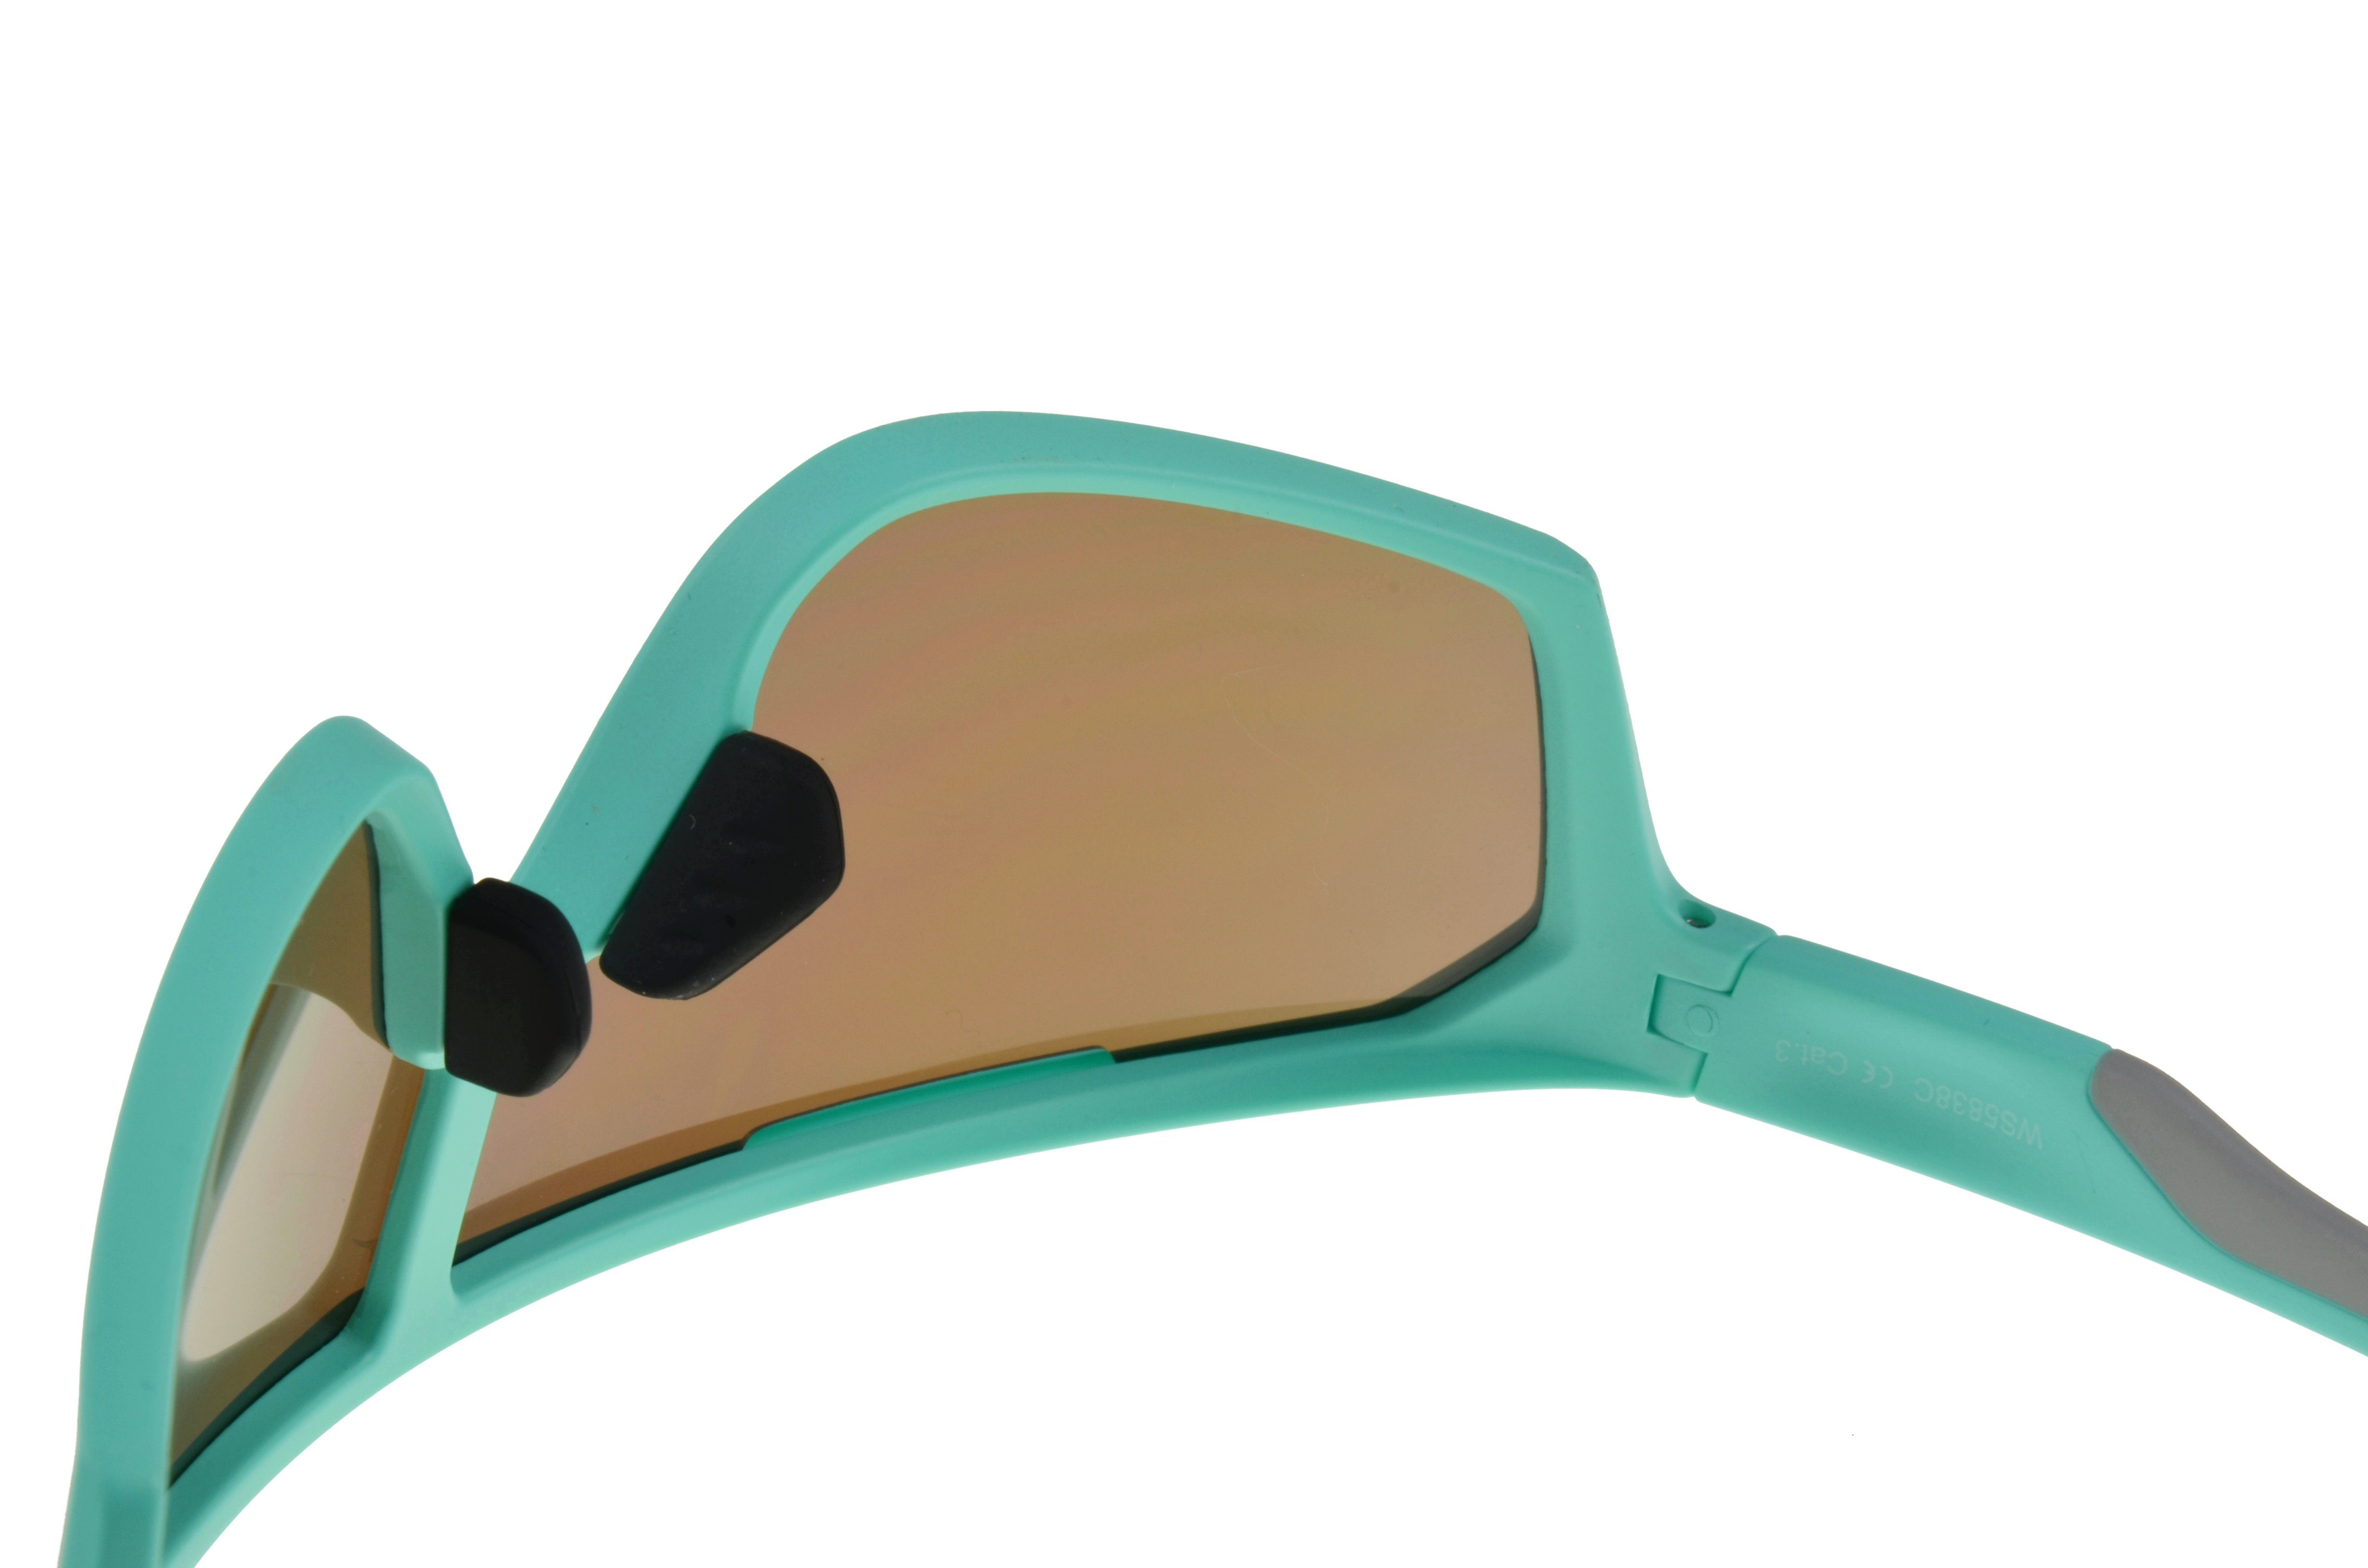 Gamswild mintgrün Sonnenbrille Damen Fahrradbrille Unisex weiß Herren Skibrille TR90 tolles WS5838 Monoscheibensonnenbrille Design, blau, grün,